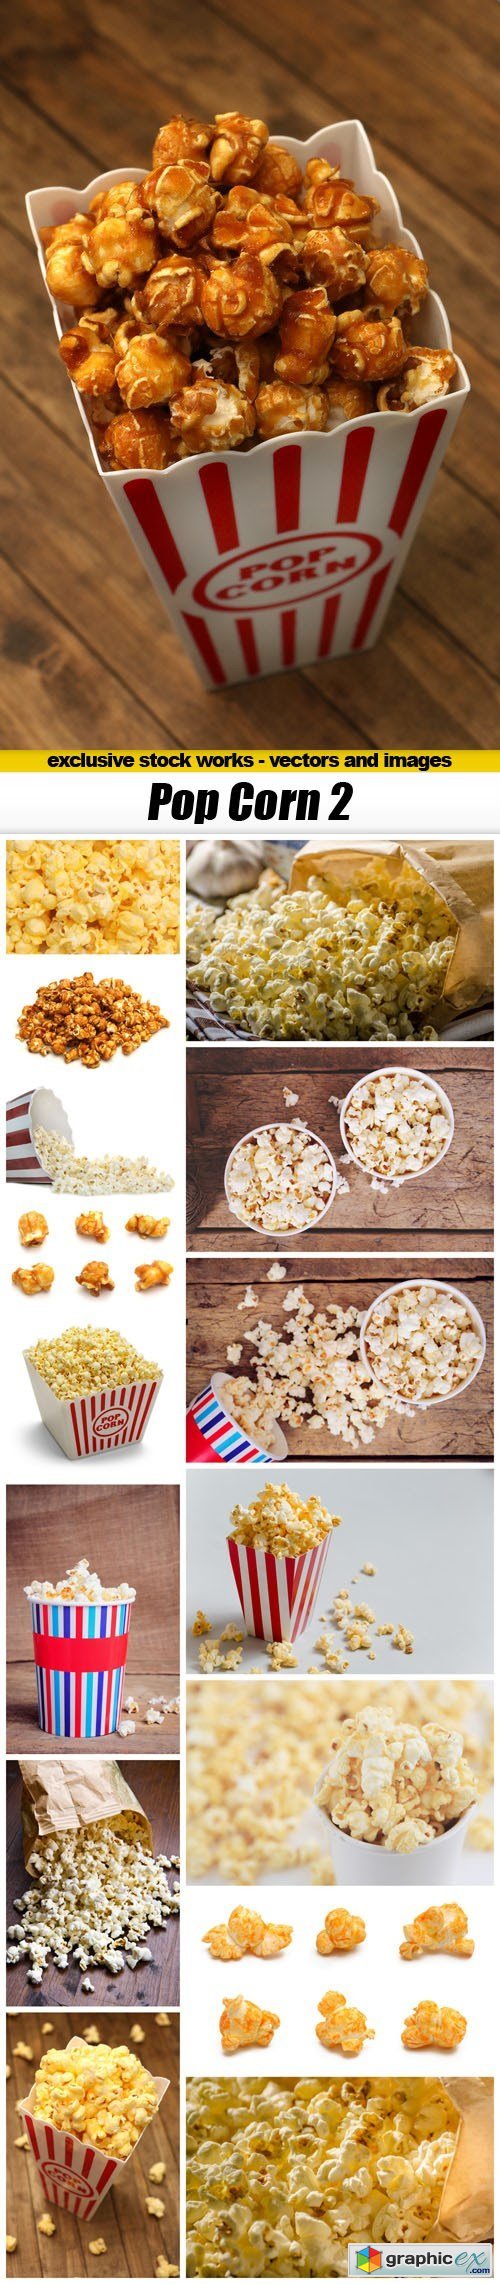 Pop Corn 2 - 15xUHQ JPEG